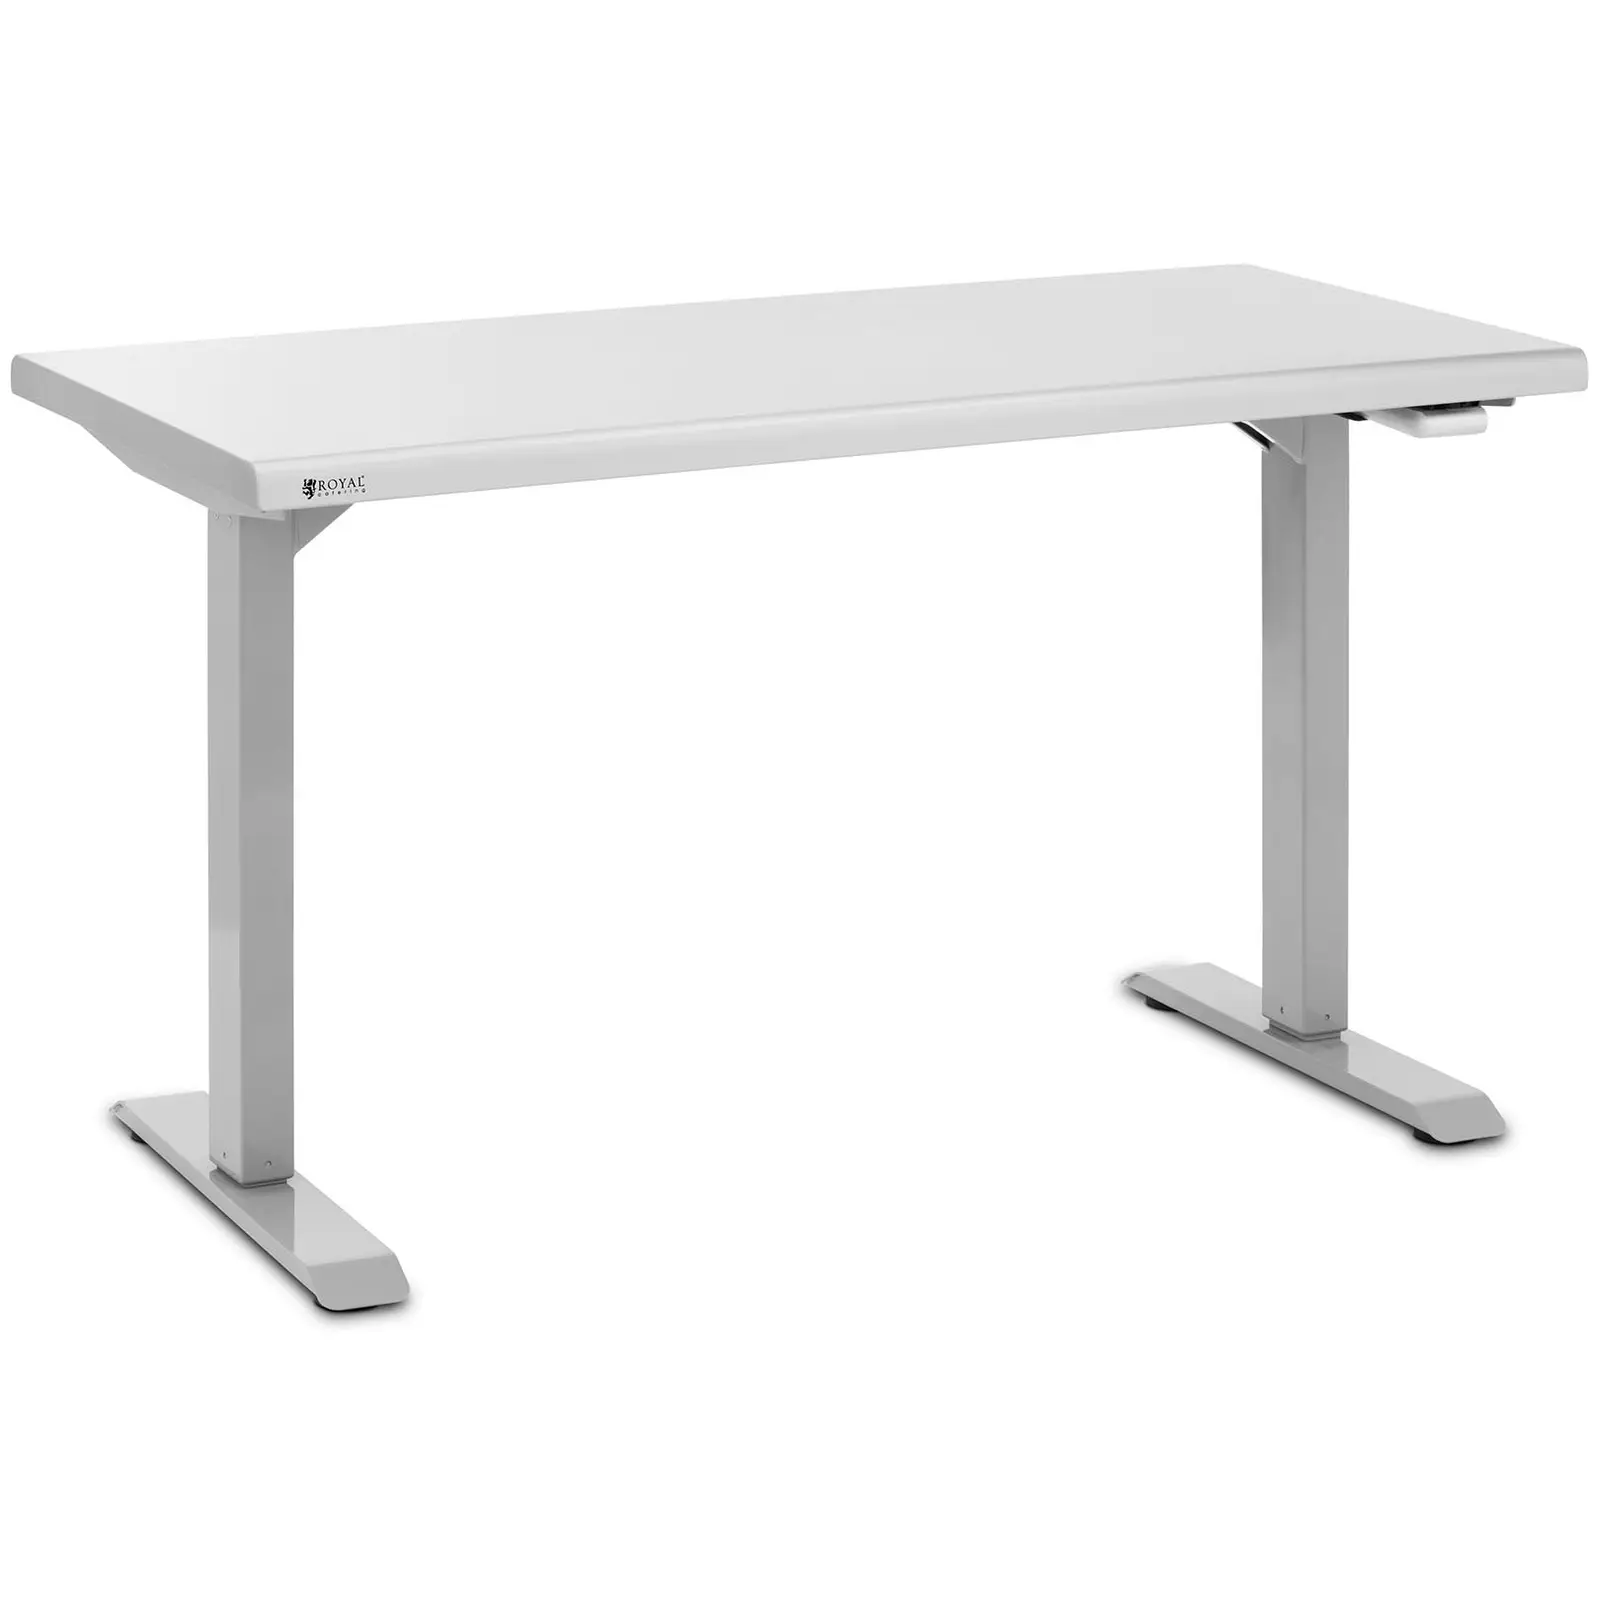 Stôl z nehrdzavejúcej ocele - výškovo nastaviteľný - 126 x 60 x 71,5 – 102 cm - nosnosť 70 kg - Royal Catering